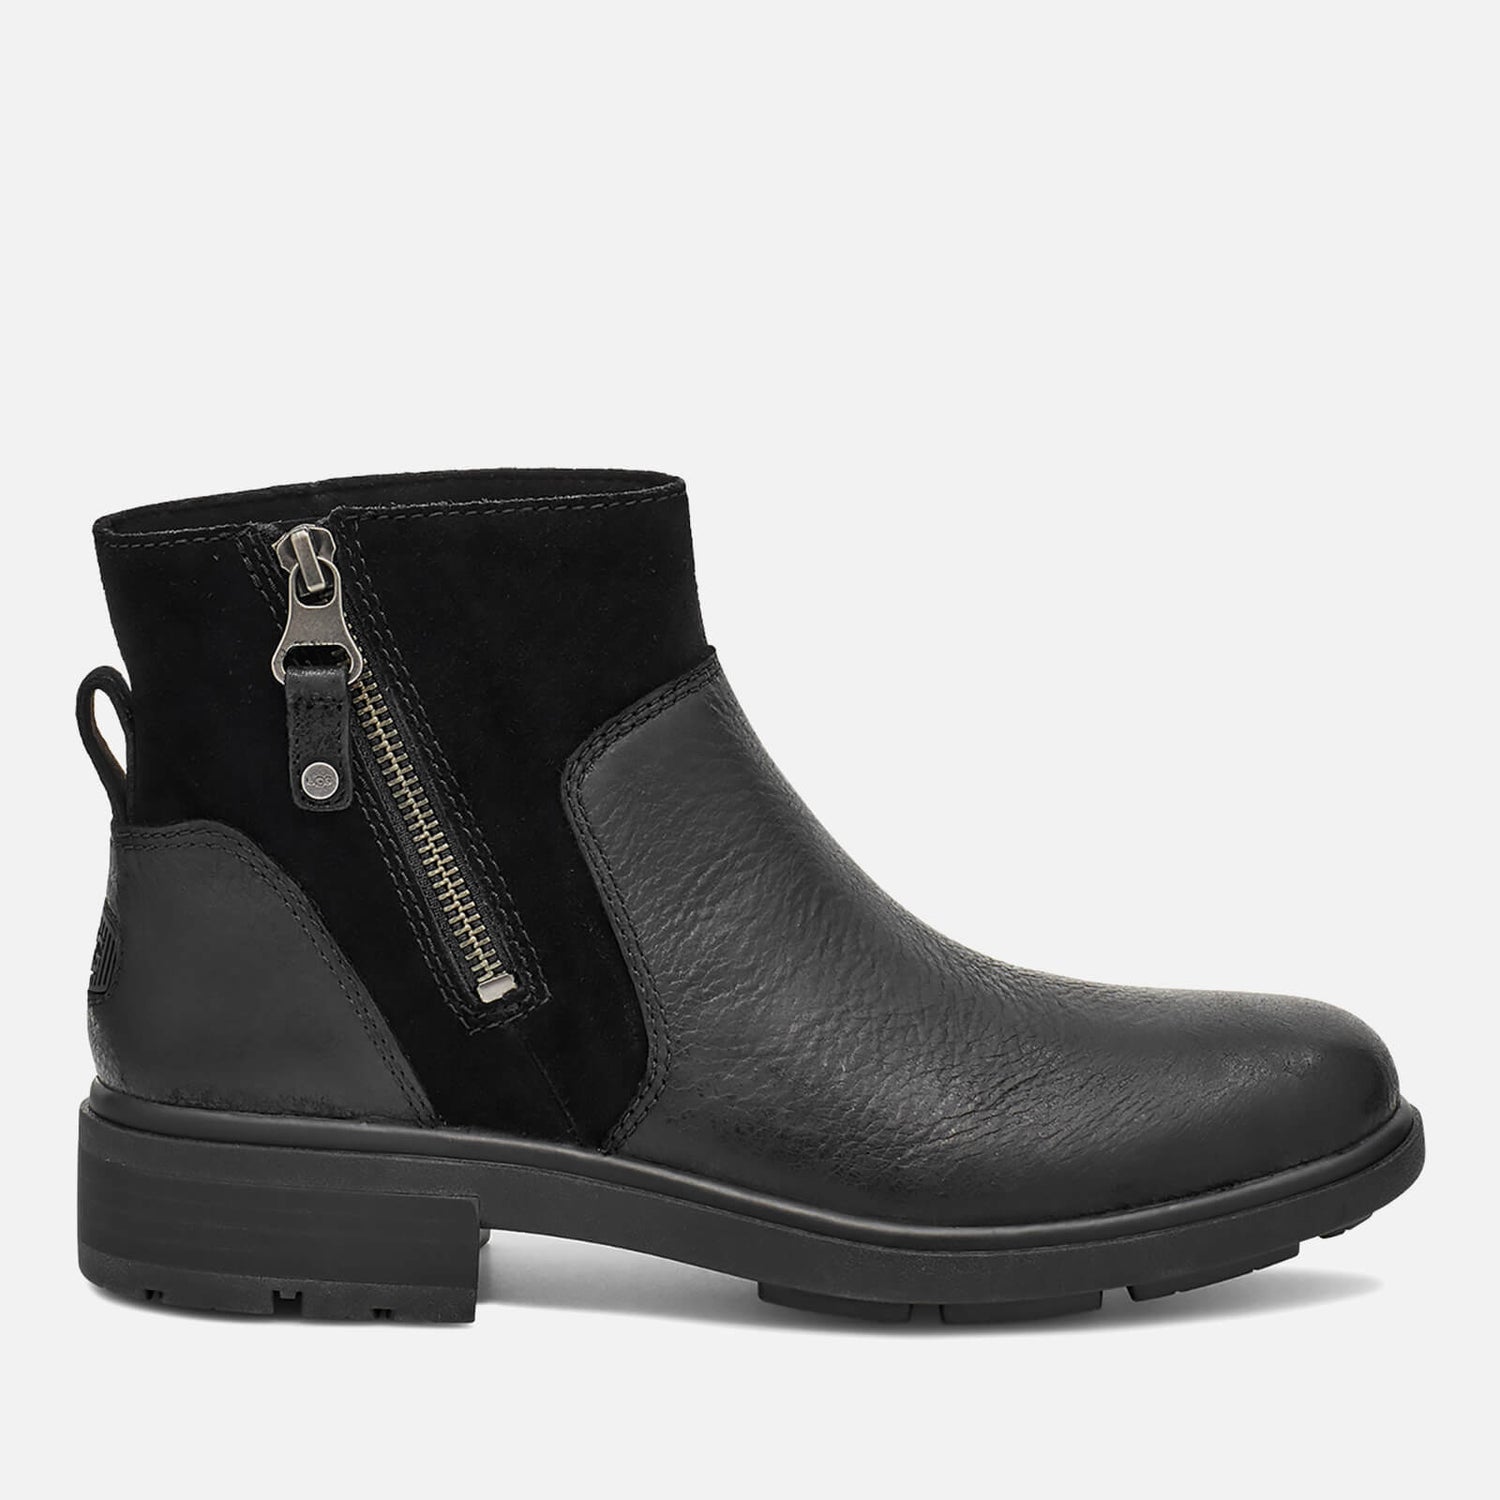 UGG Women's Harrison Zip Waterproof Leather Ankle Boots - Black - UK 3